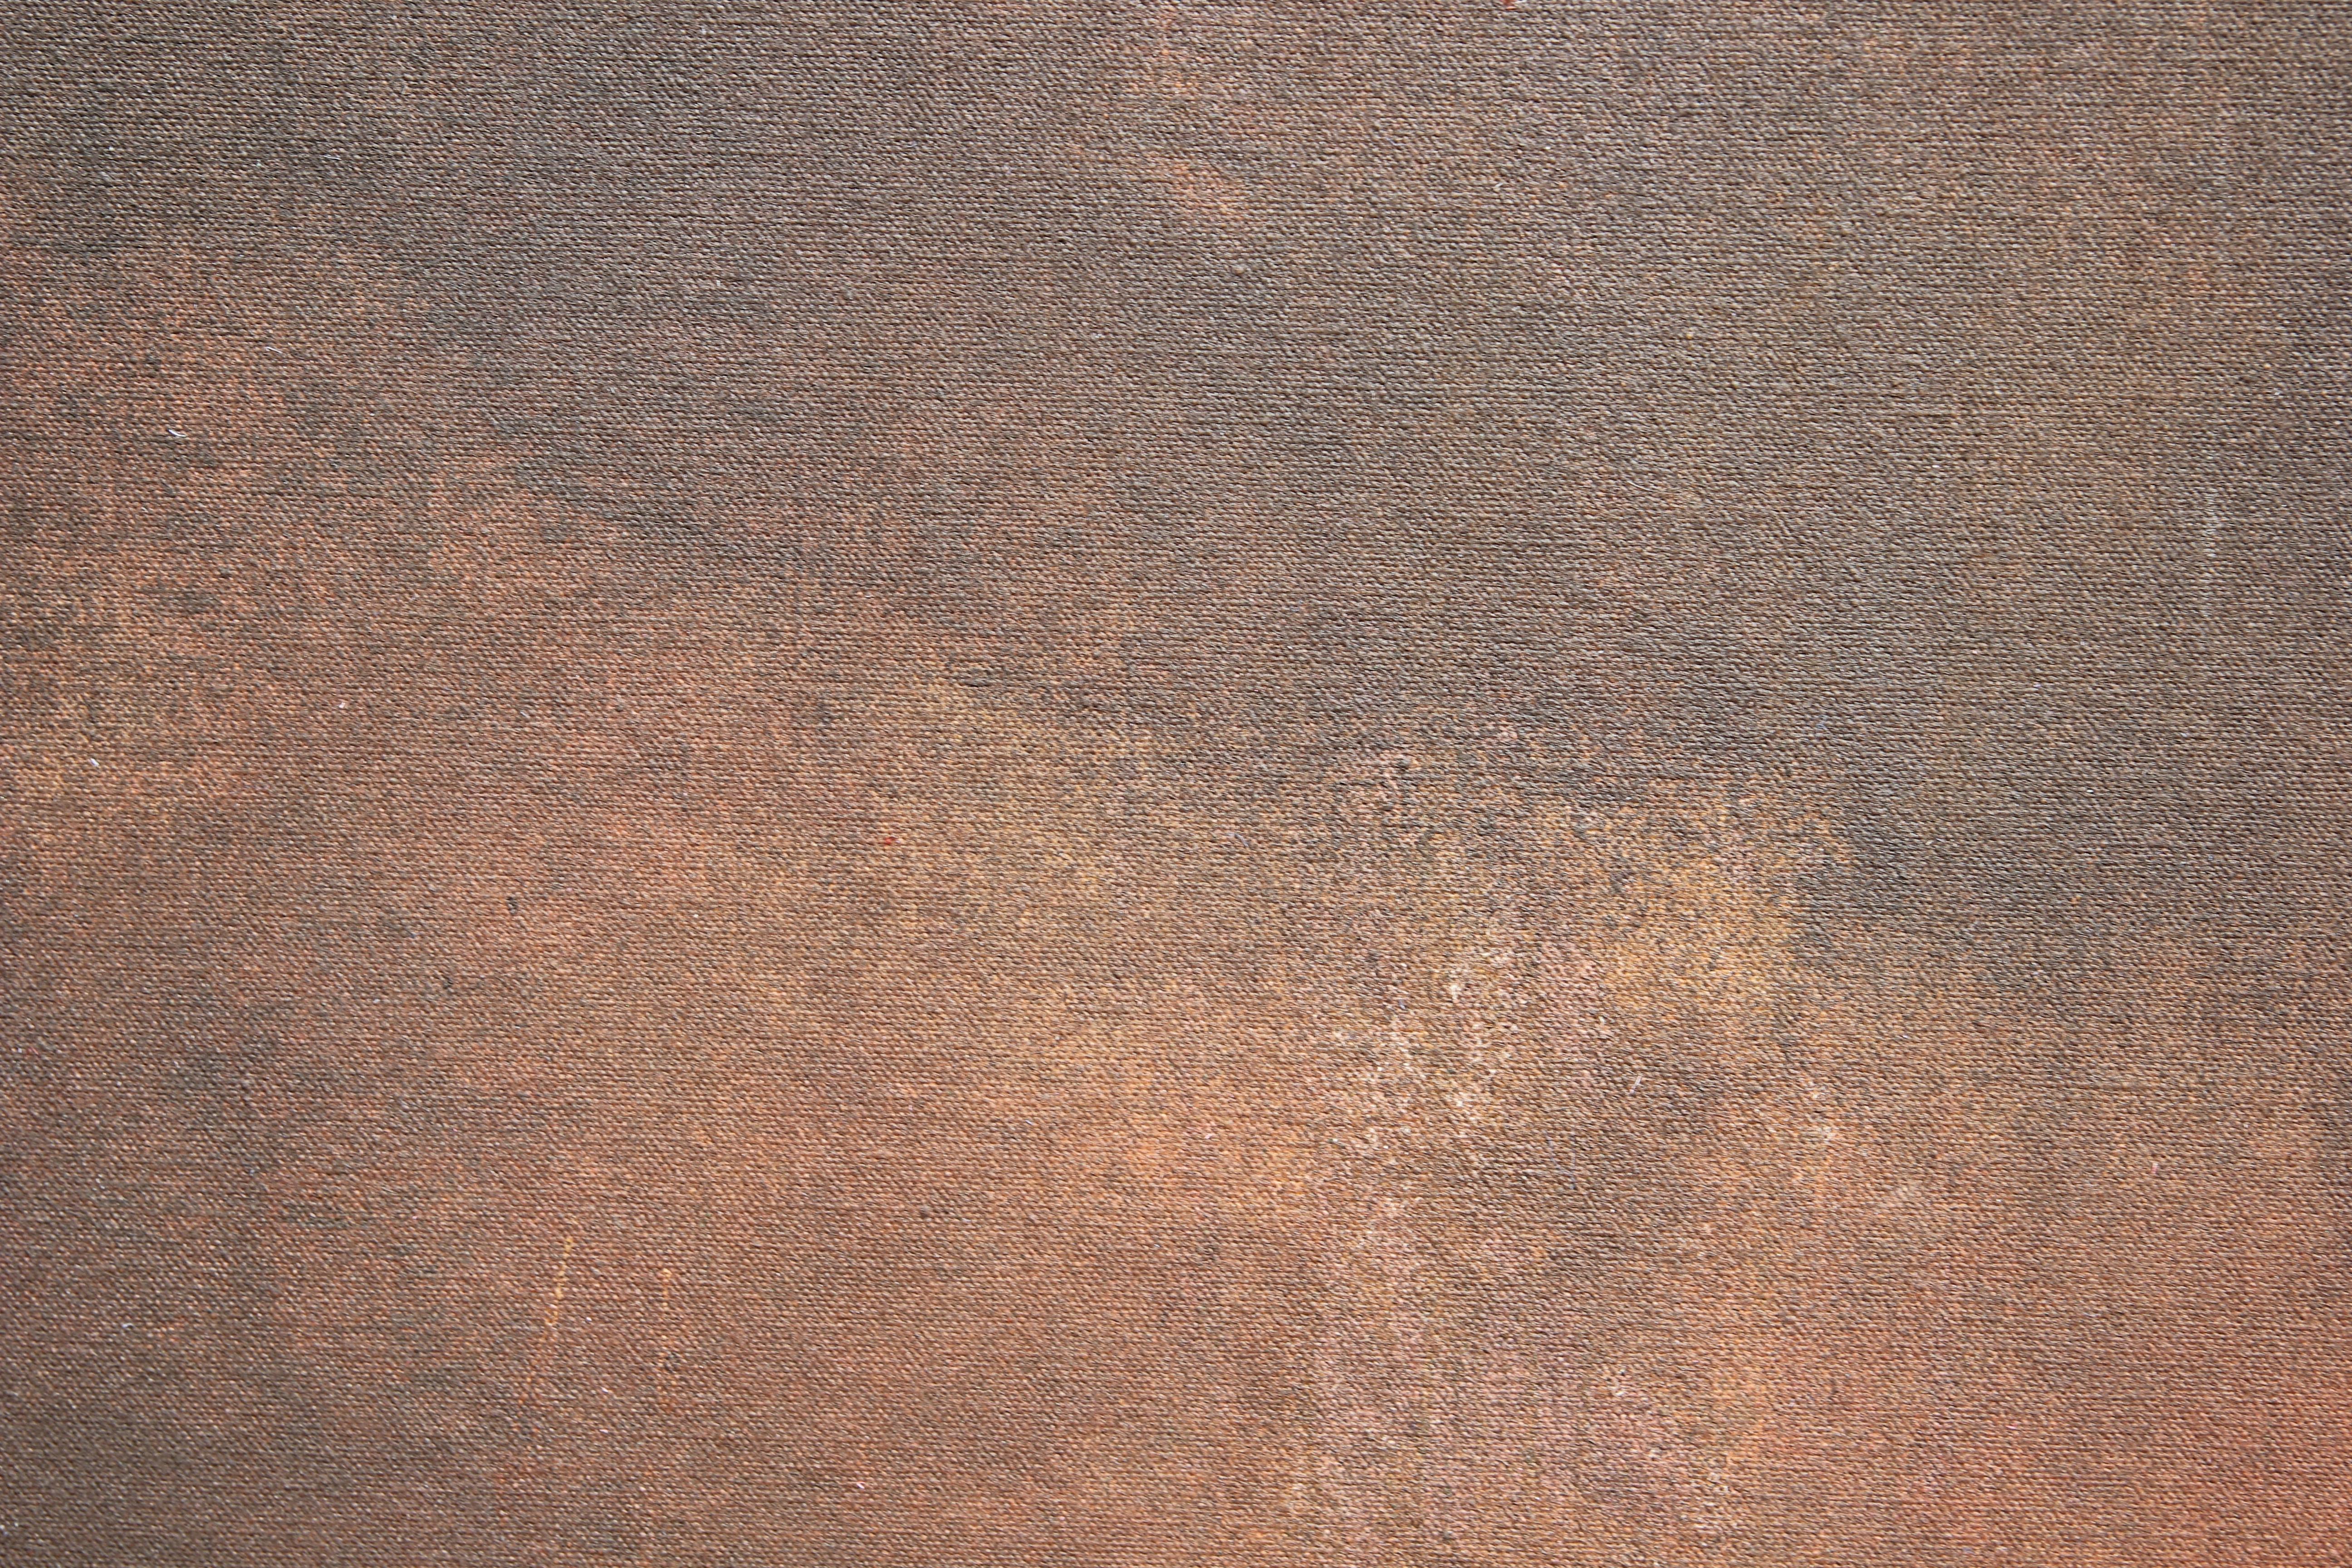 Grande peinture expressionniste abstraite influencée par Mark Rothko qui incorpore des tons noirs, marron foncé, orange et jaunes. La toile est signée, titrée et datée par l'artiste. La toile n'est pas encadrée.

Biographie de l'artiste :
Karen